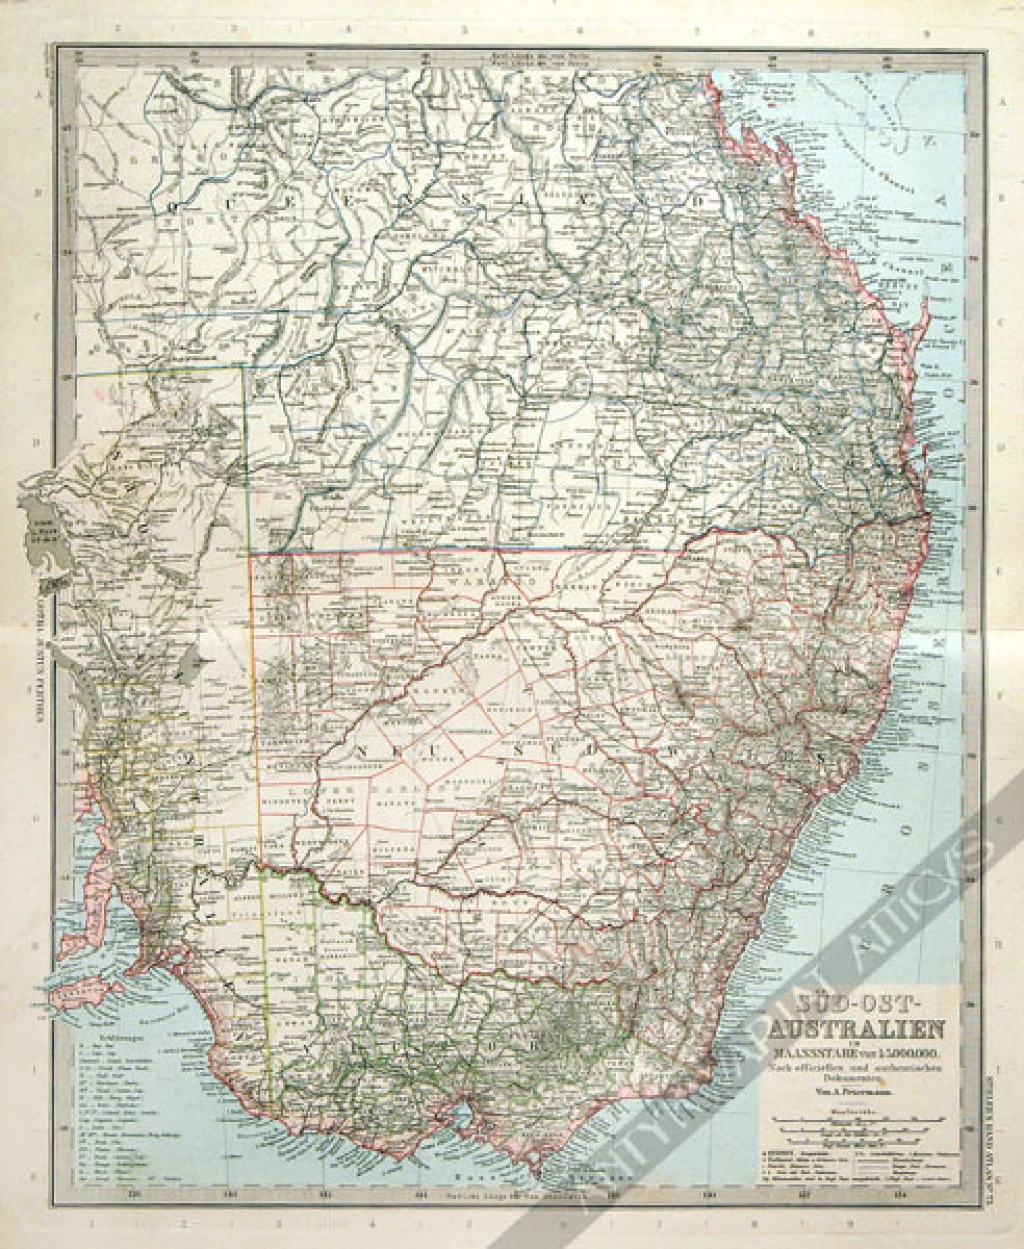 [mapa] Sud-Ost - Australien [Południowo-wschodnia Australia]